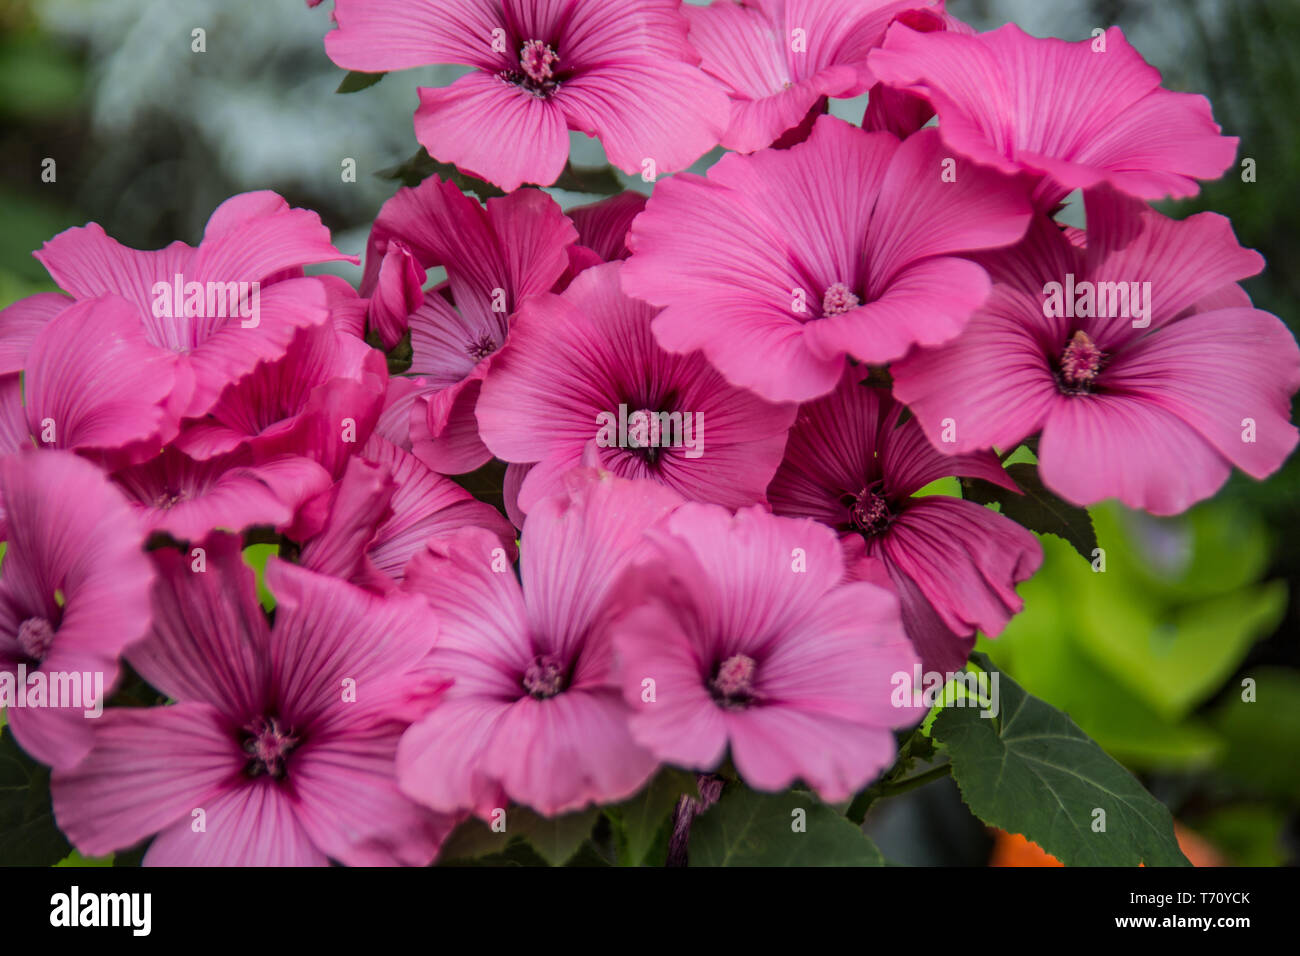 Viola malva fiori con stami Foto Stock